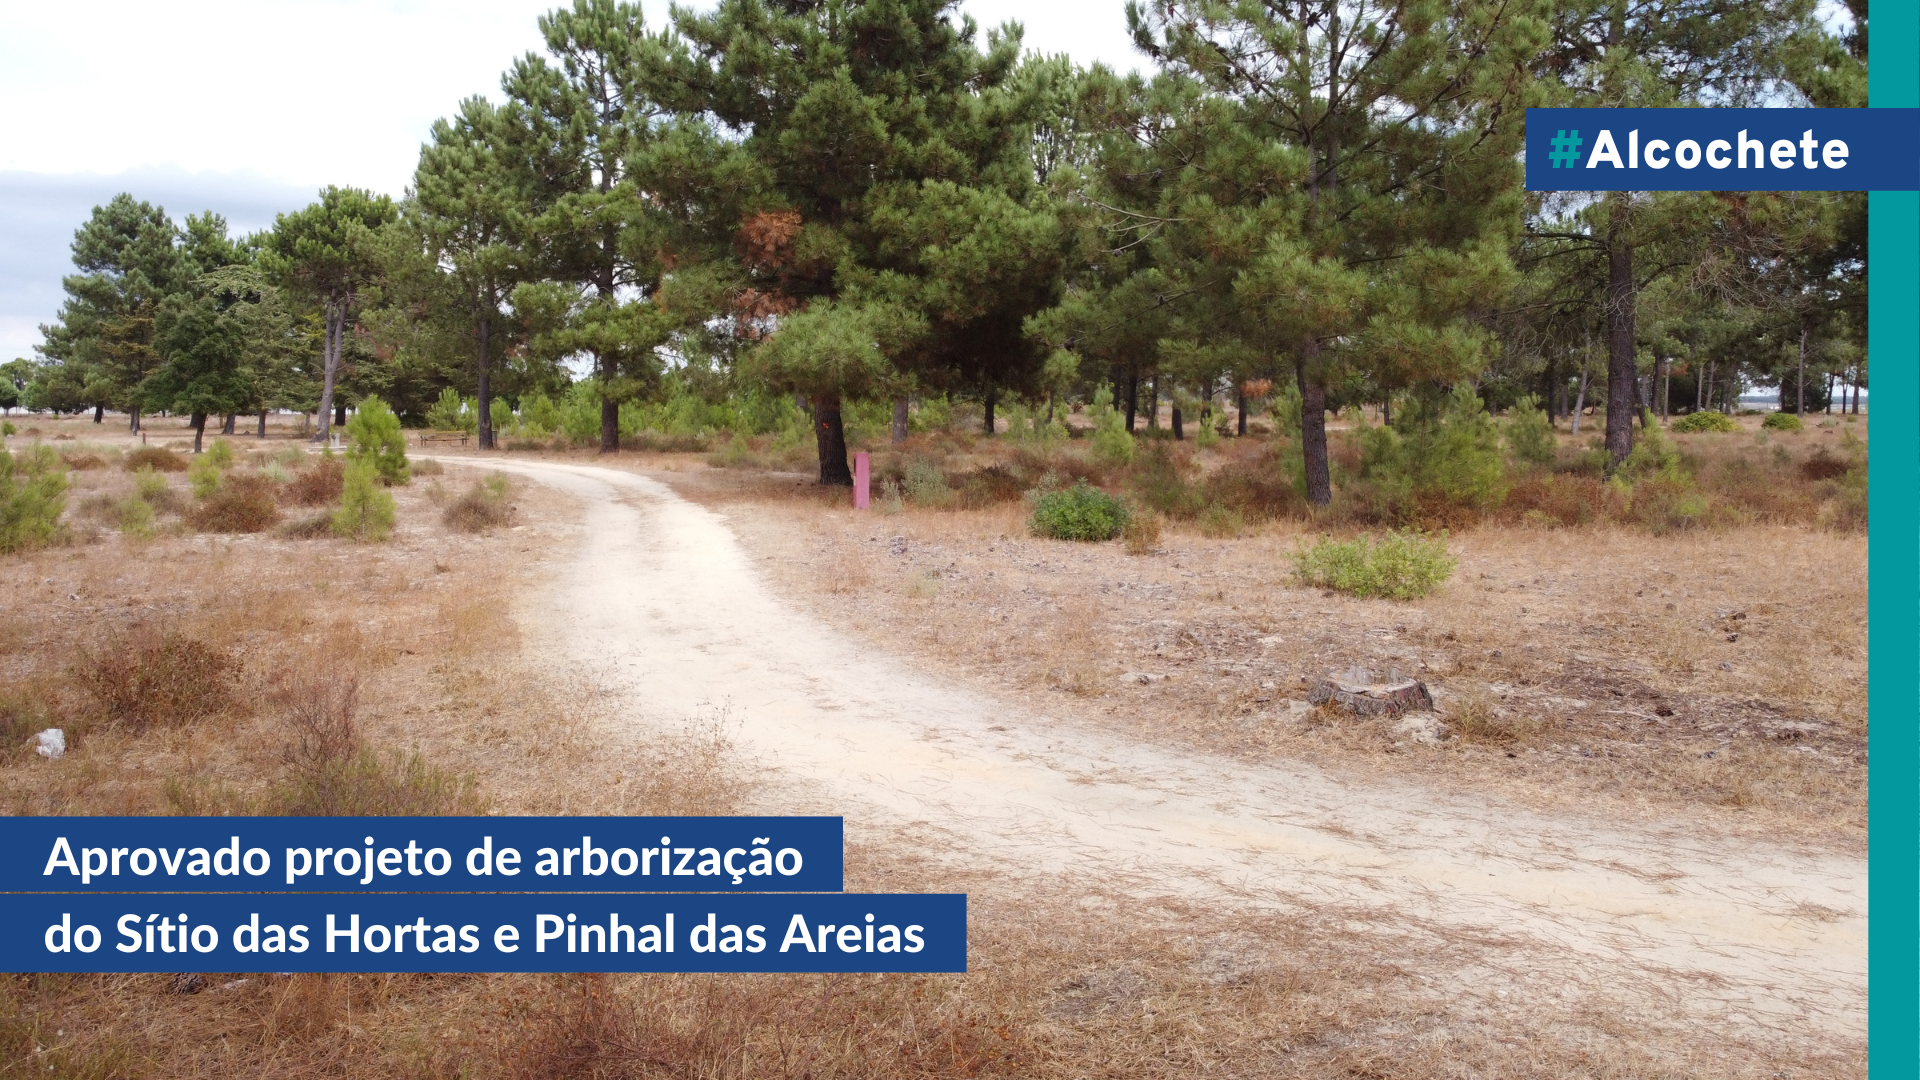 Aprovado projeto de arborização do Sítio das Hortas e Pinhal das Areias 